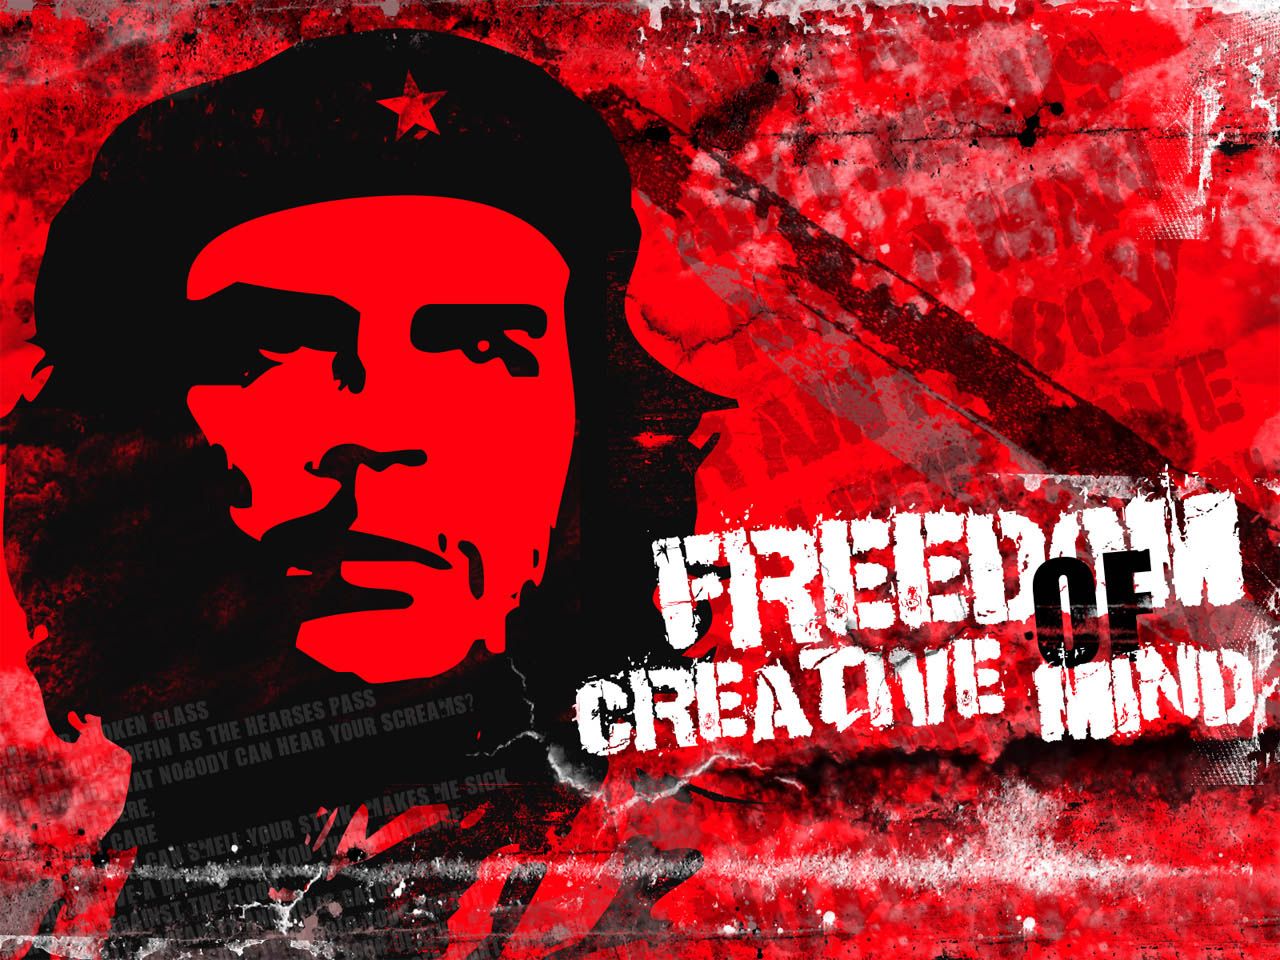 Che Guevara Wallpaper. Che Guevara Smoking Wallpaper, Max Guevara Wallpaper and Planet of the Apes Che Guevara Wallpaper